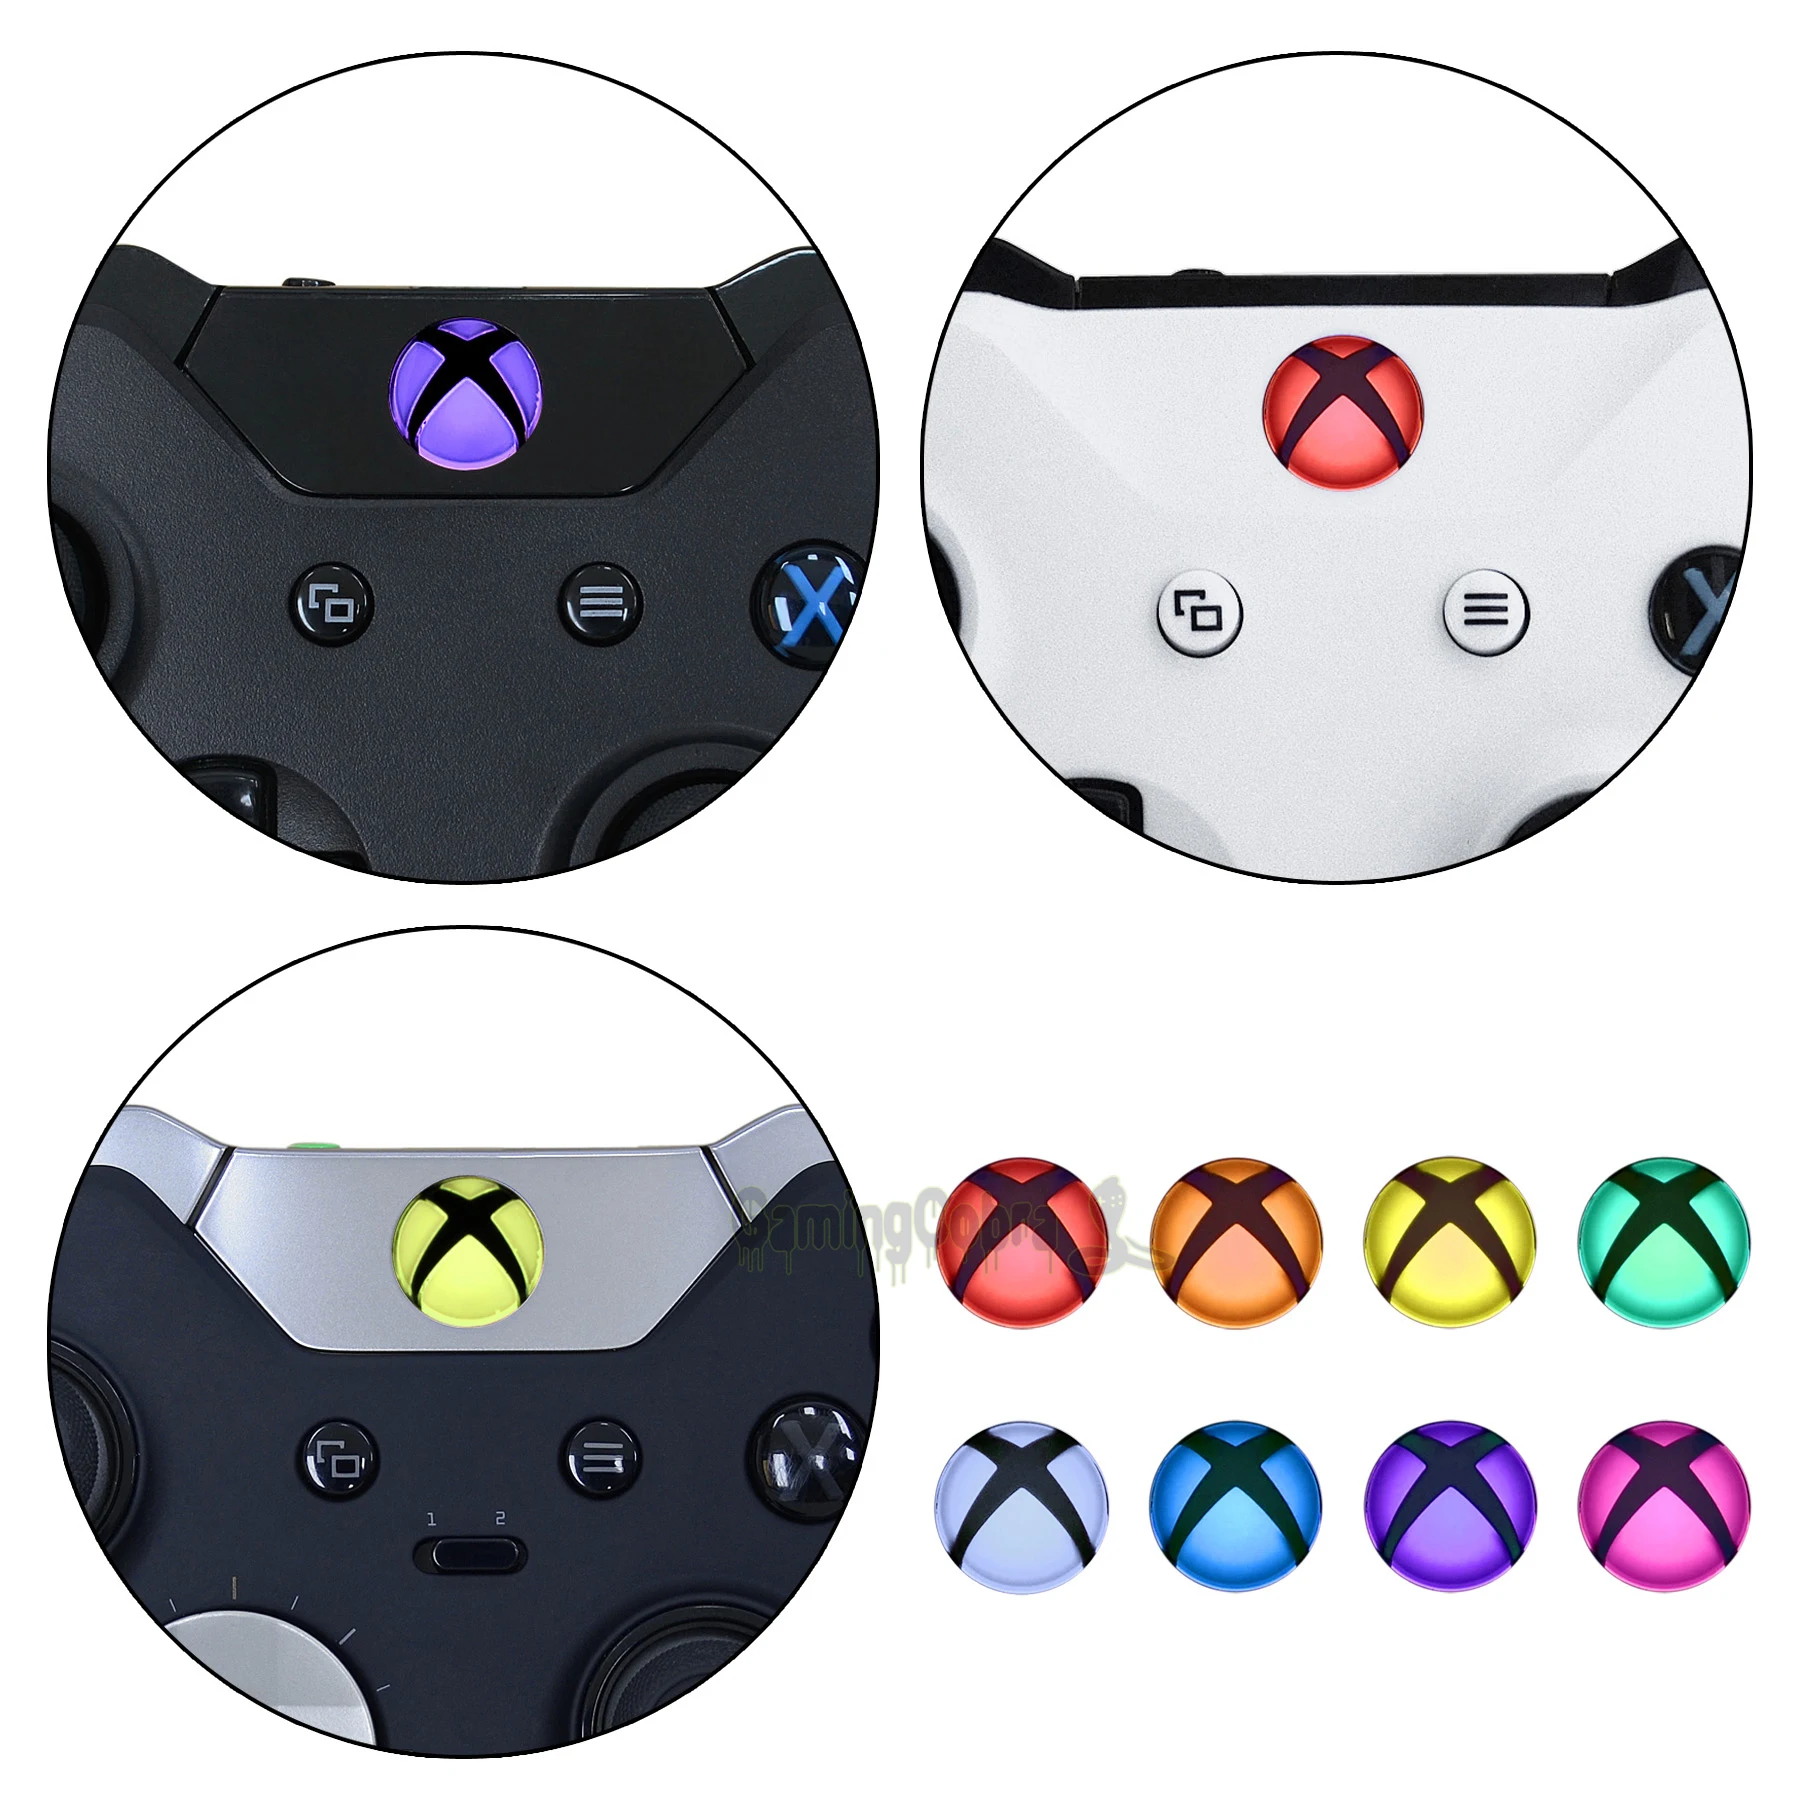 Autocollants extremèrent les autocollants LED du bouton de guide domestique personnalisé pour la série X / S X / S Xbox One S / X Xbox One Xbox One Elite Controller 